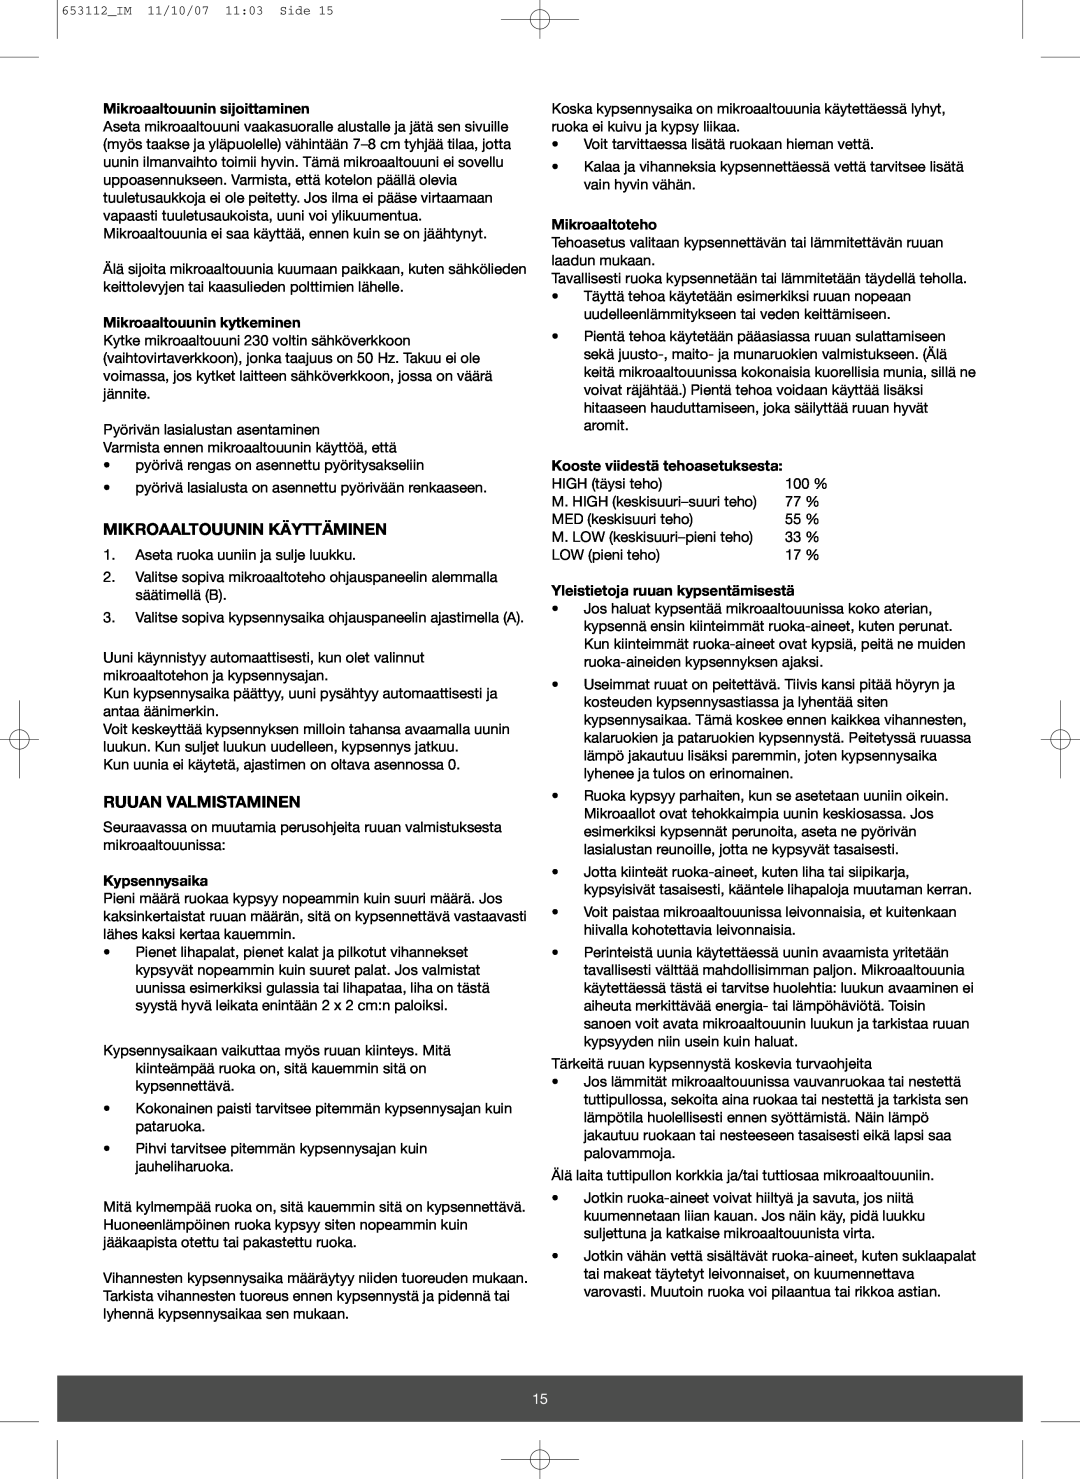 Melissa 653-115 manual Mikroaaltouunin Käyttäminen, Ruuan Valmistaminen, Mikroaaltouunin sijoittaminen, Kypsennysaika 